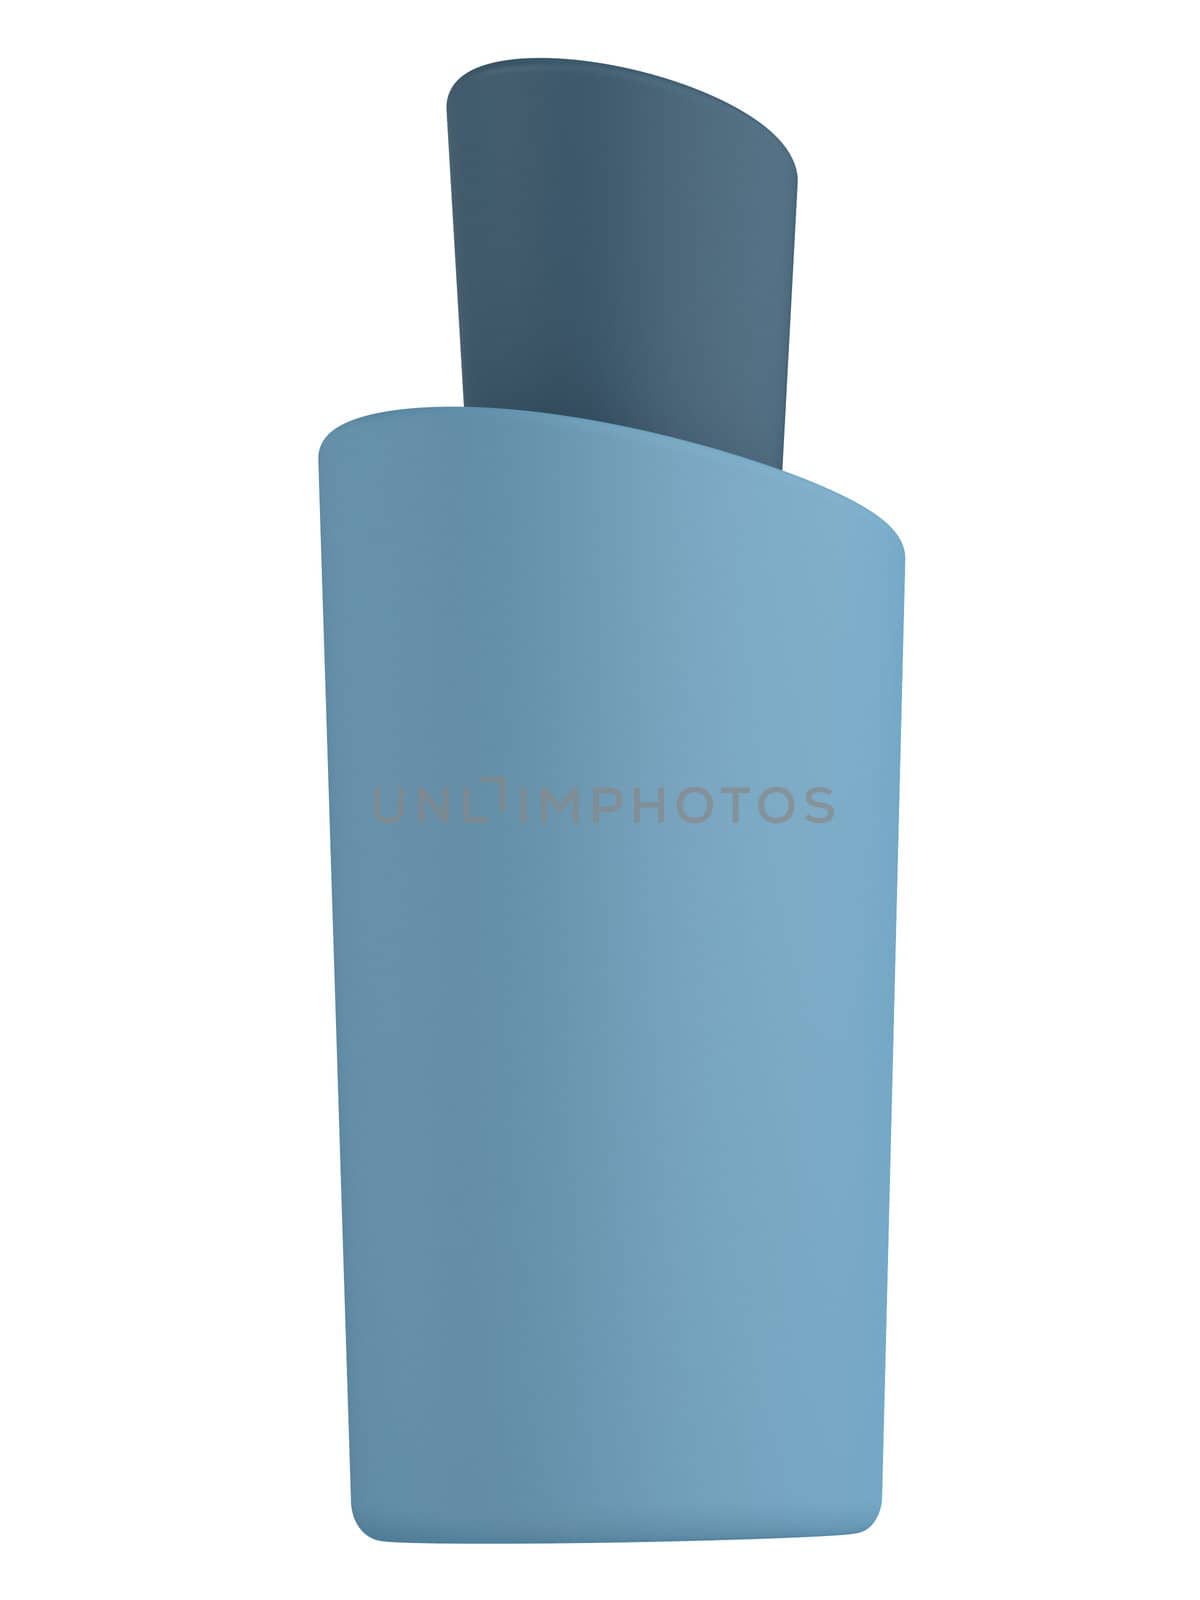 Blue bottle shampoo isolated on white background